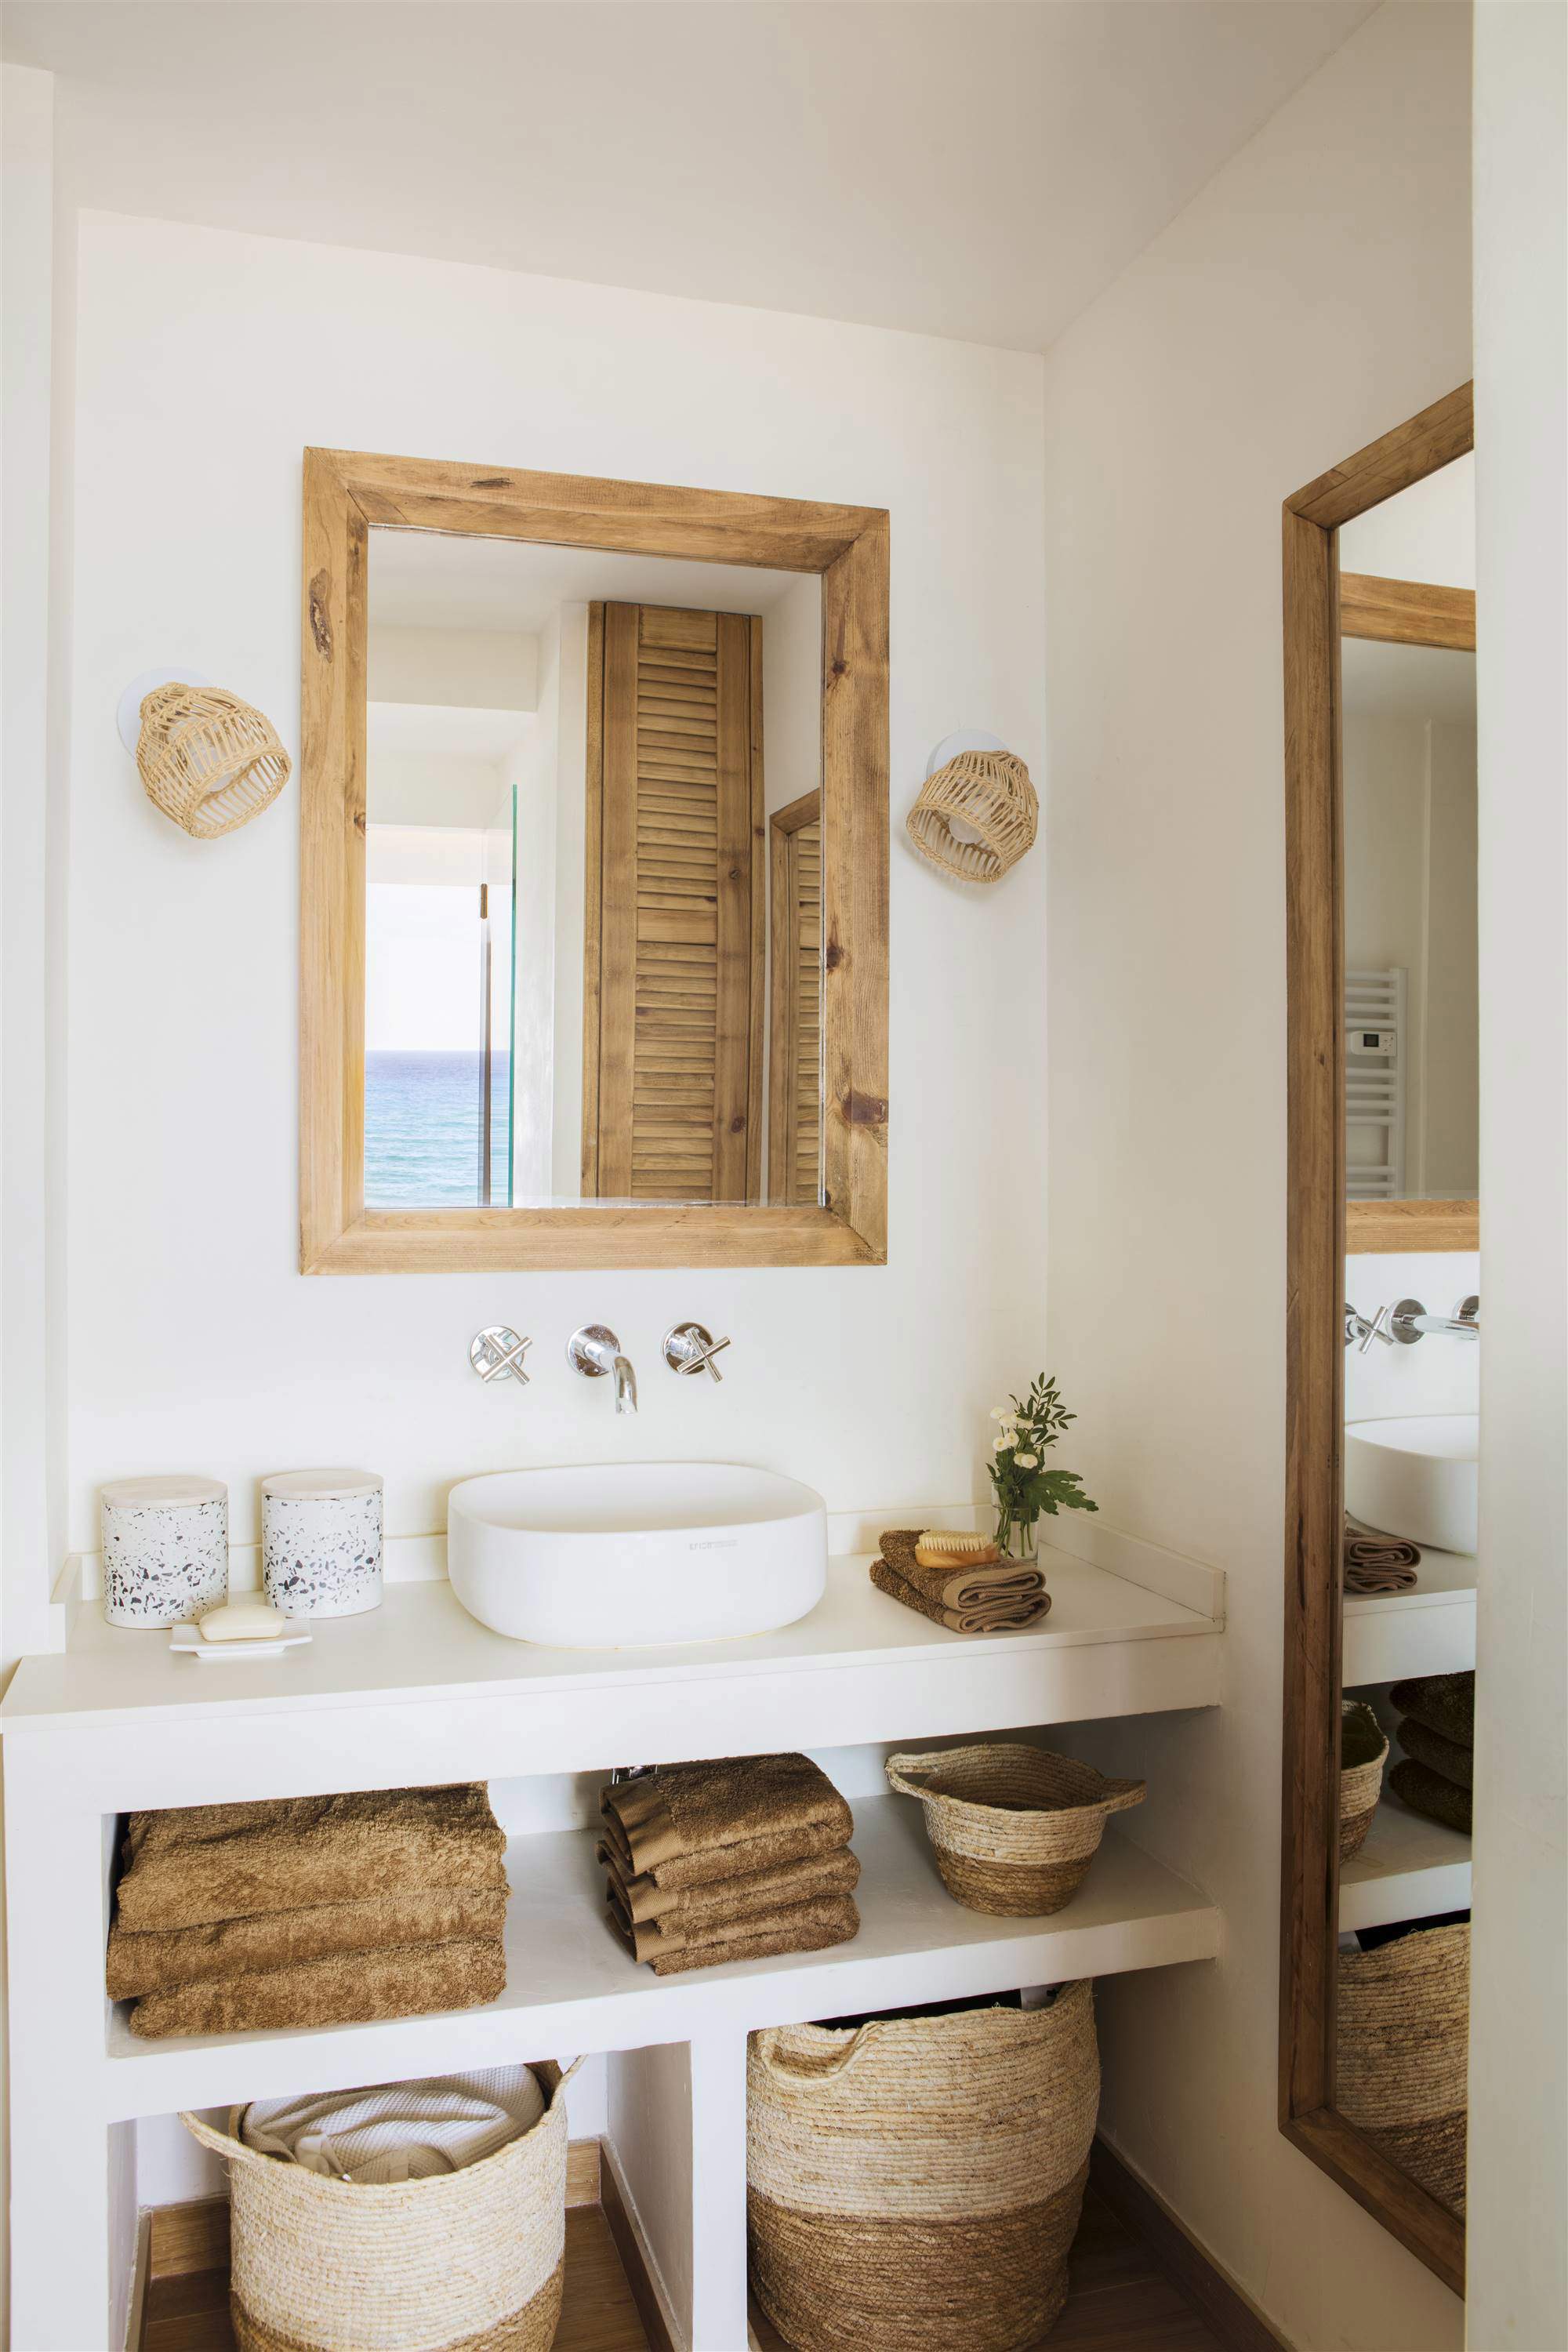 Baño con mueble bajolababo de obra, lavabo exento, espejo de madera, apliques de fibra y toallas marrones.